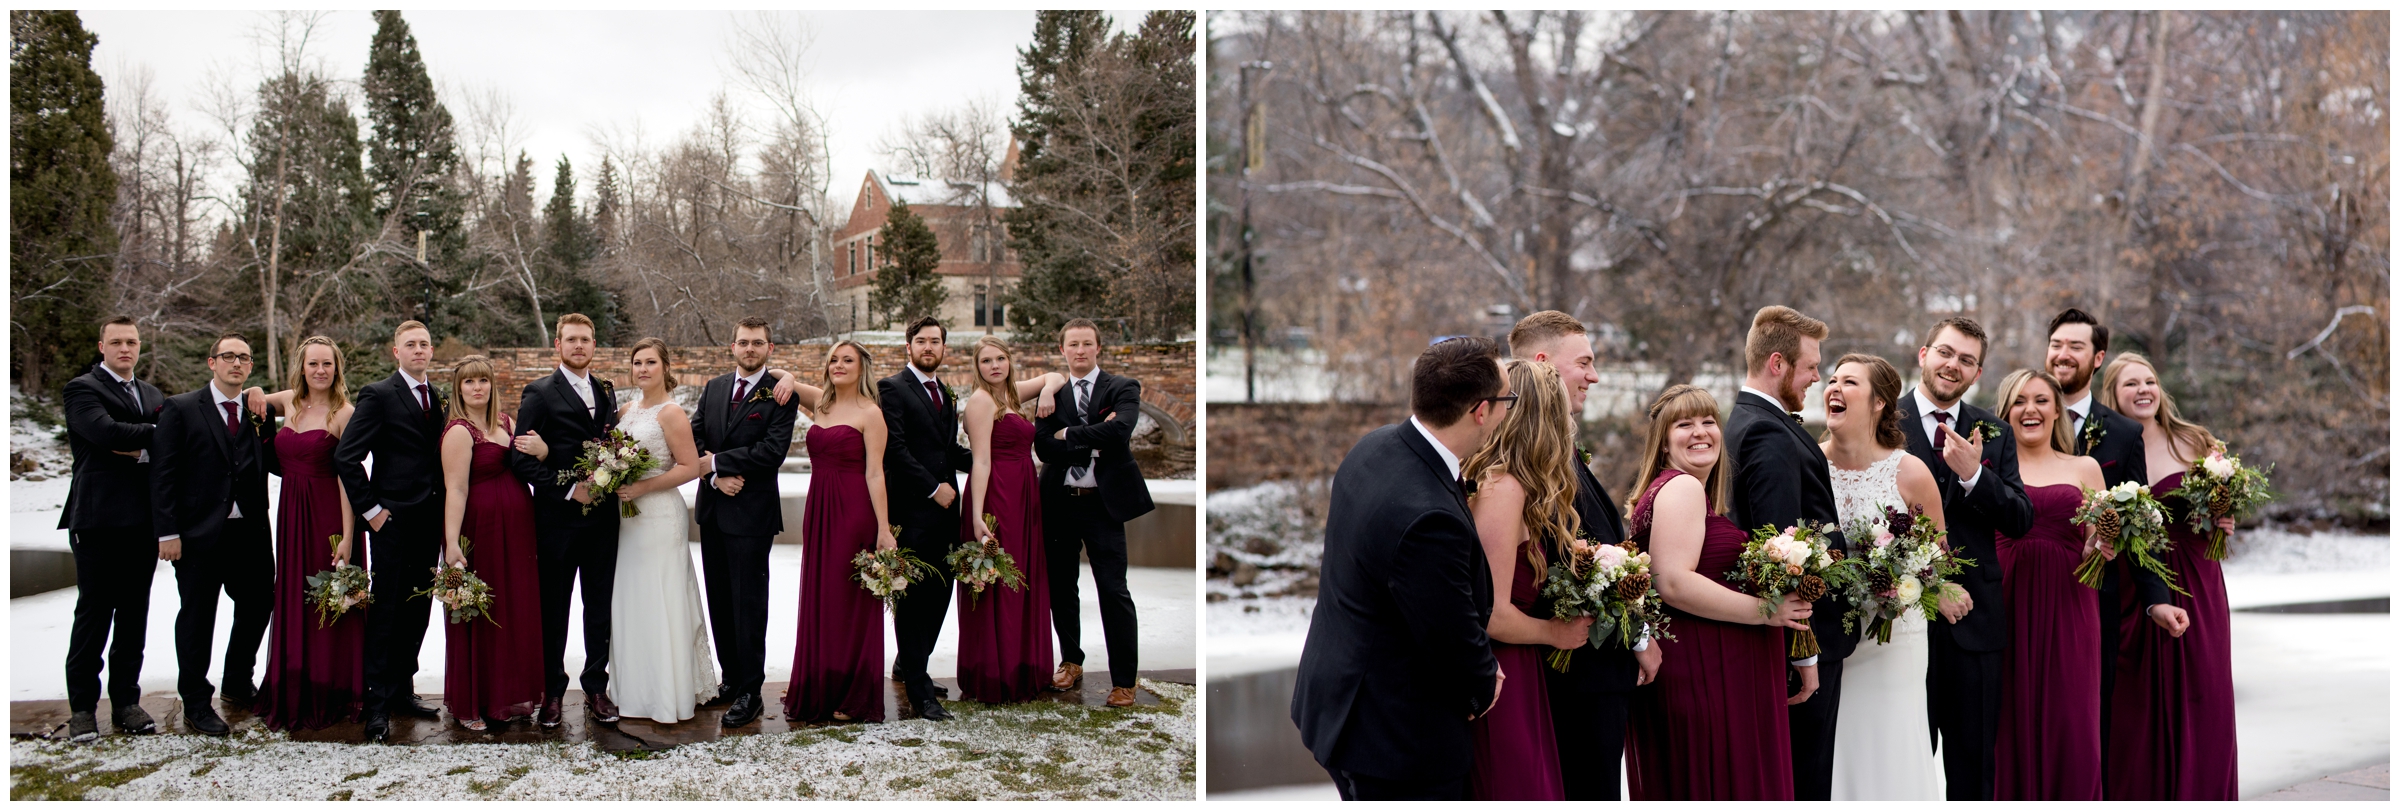 fun bridal party photos in the snow on CU Boulder campus in Colorado 